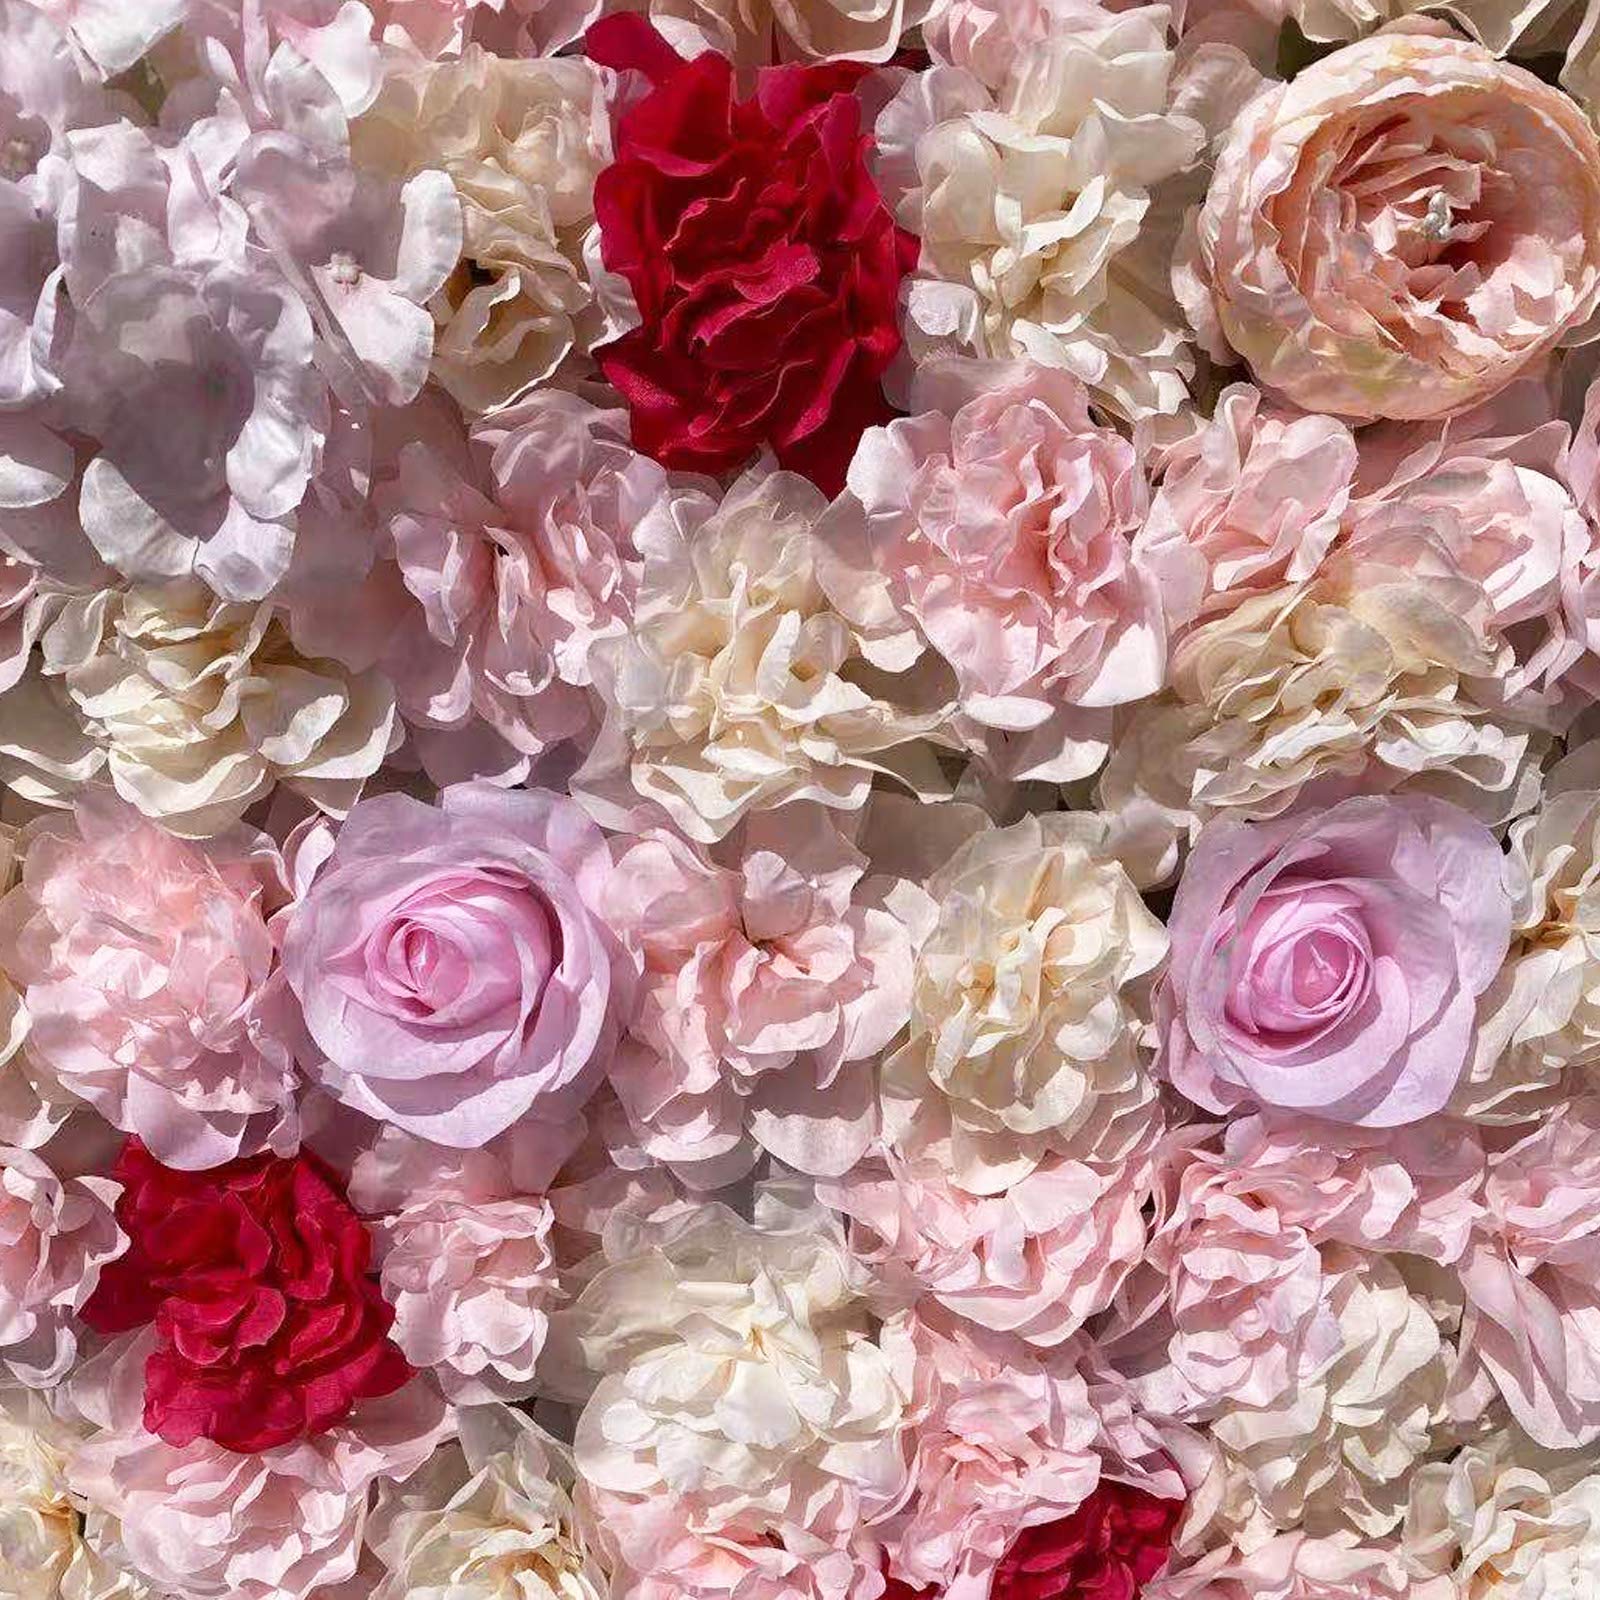 10 Stück Künstliche Blumenwand 40x60cm Blumen Wandpaneel Rosenwand